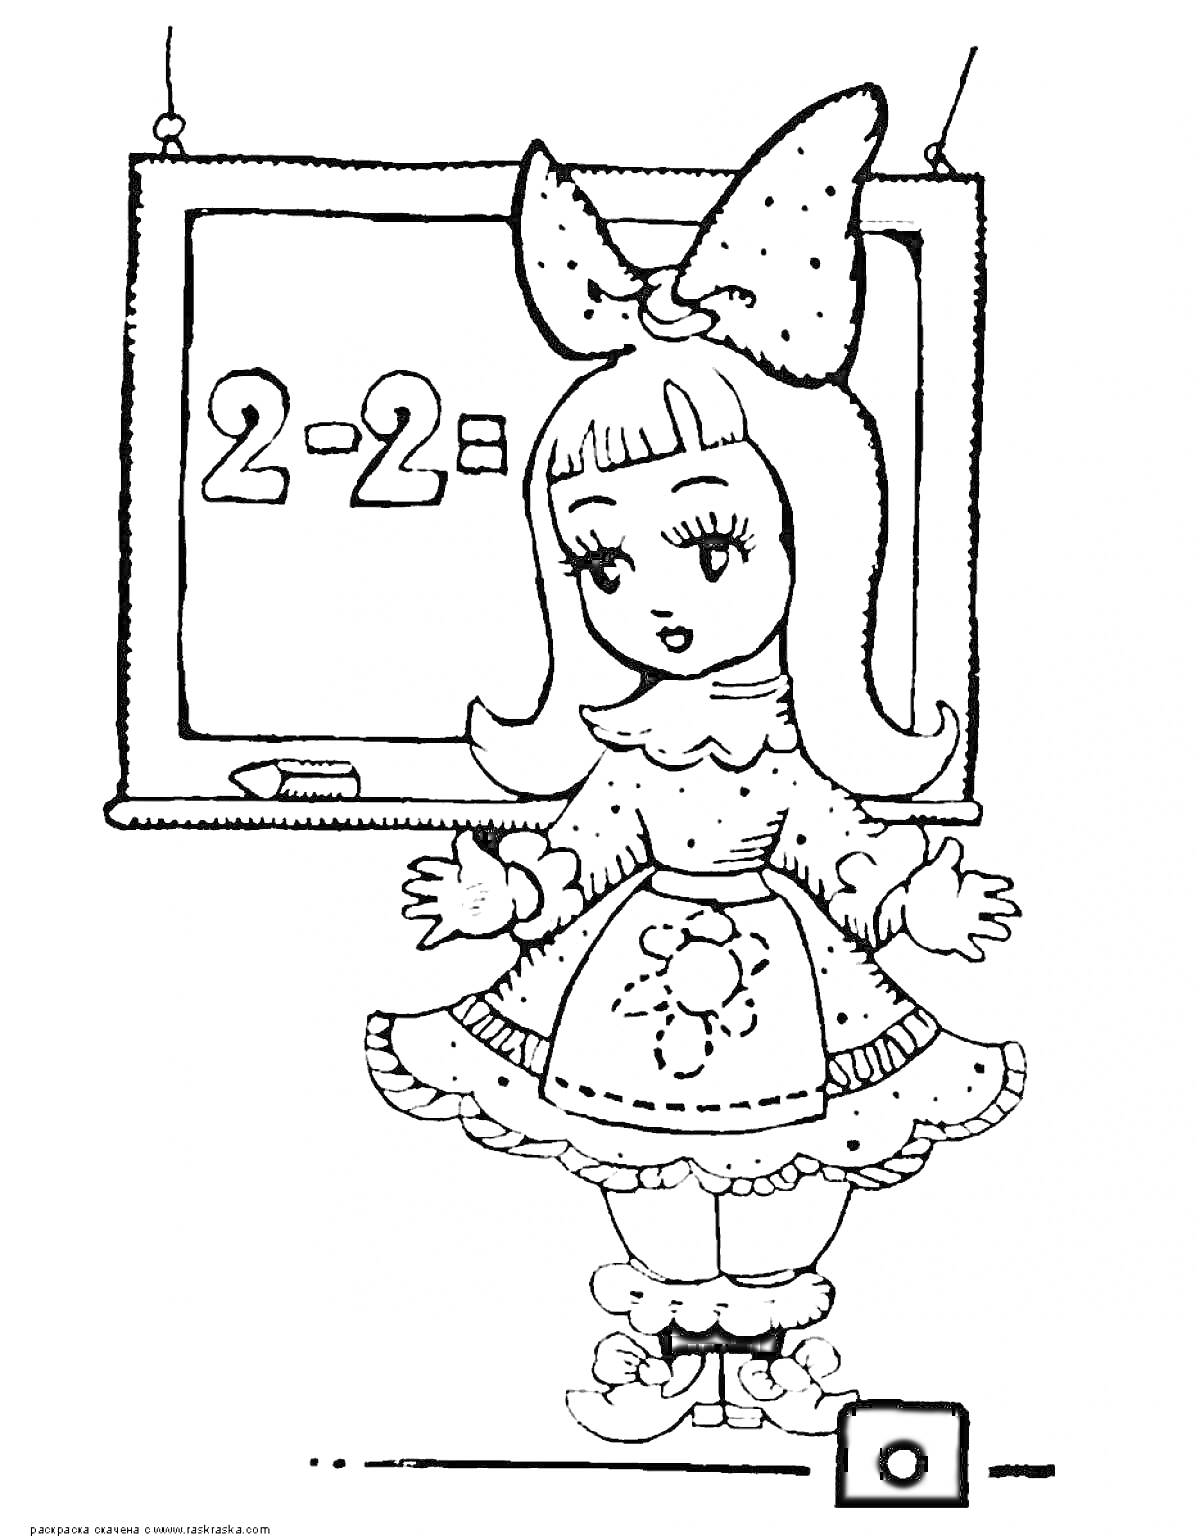 Раскраска Девочка у школьной доски с математическим примером 2-2=